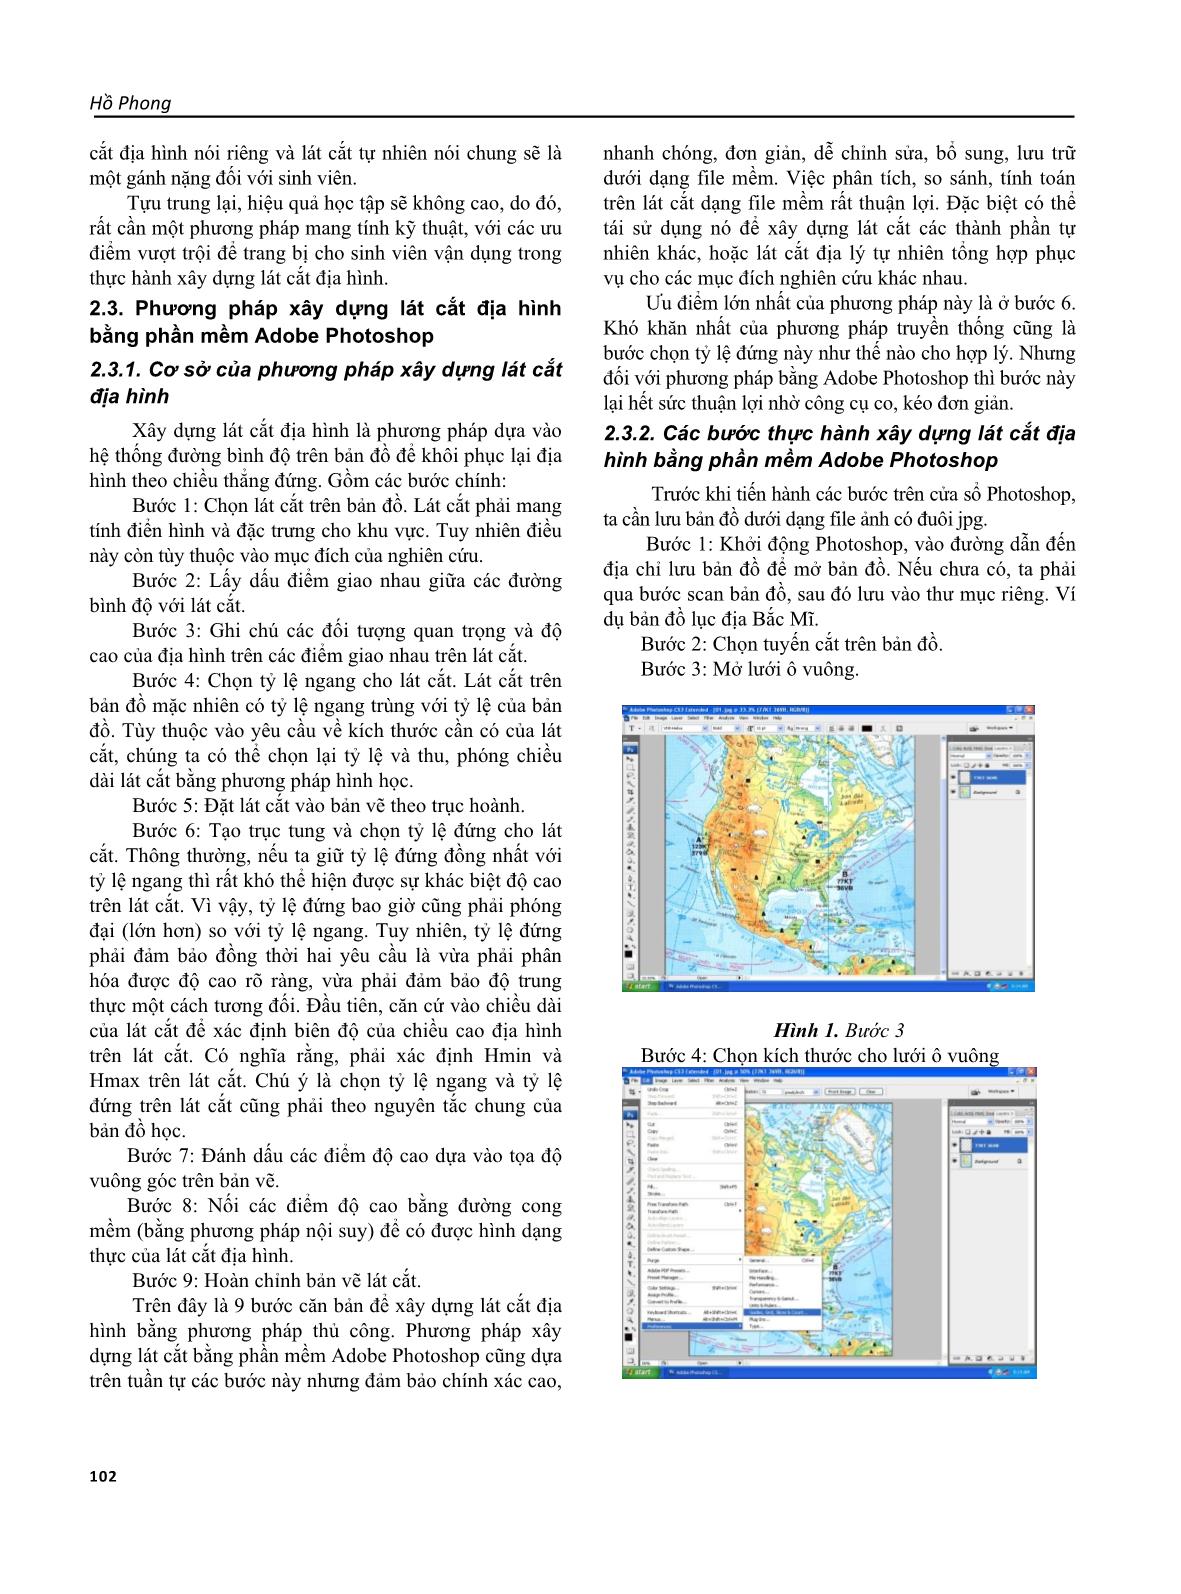 Sử dụng phần mềm Adobe Photoshop để xây dựng lát cắt địa hình trên bản đồ giấy, phục vụ việc học tập và nghiên cứu Địa lý tự nhiên trang 3